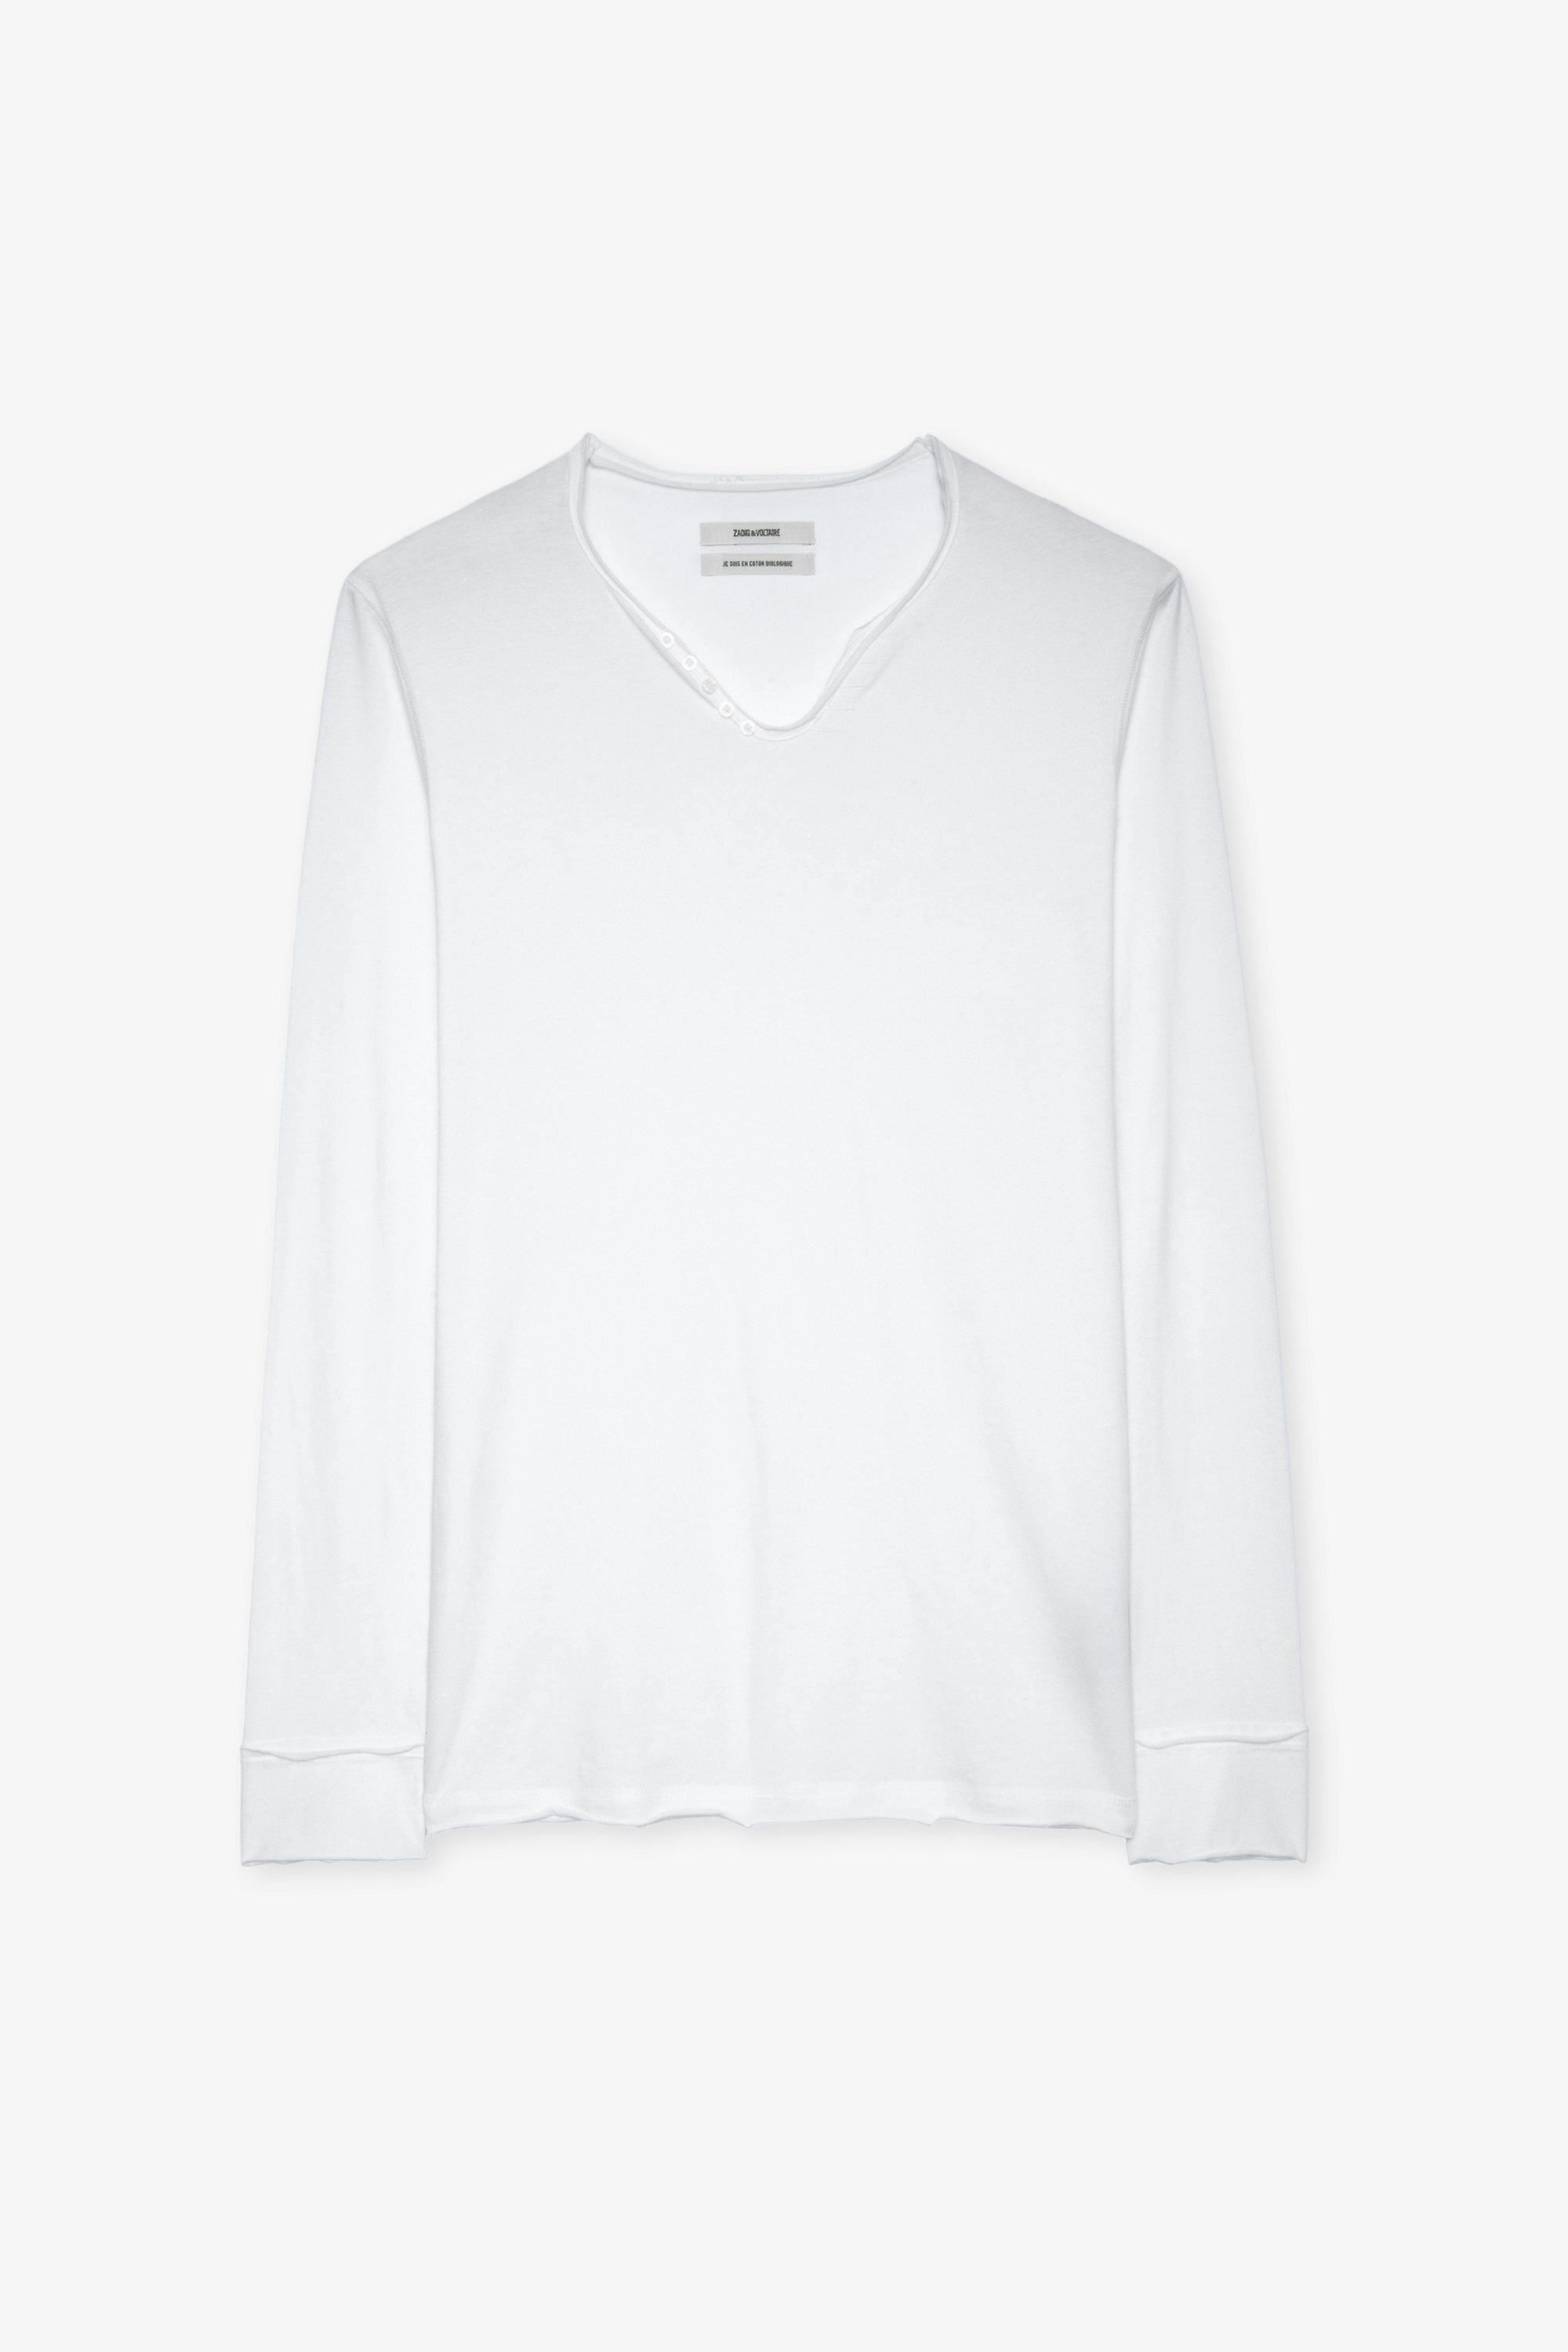 Henley-T-Shirt Monastir - Weißes Herren-T-shirt aus Baumwolle mit Henley-Ausschnitt